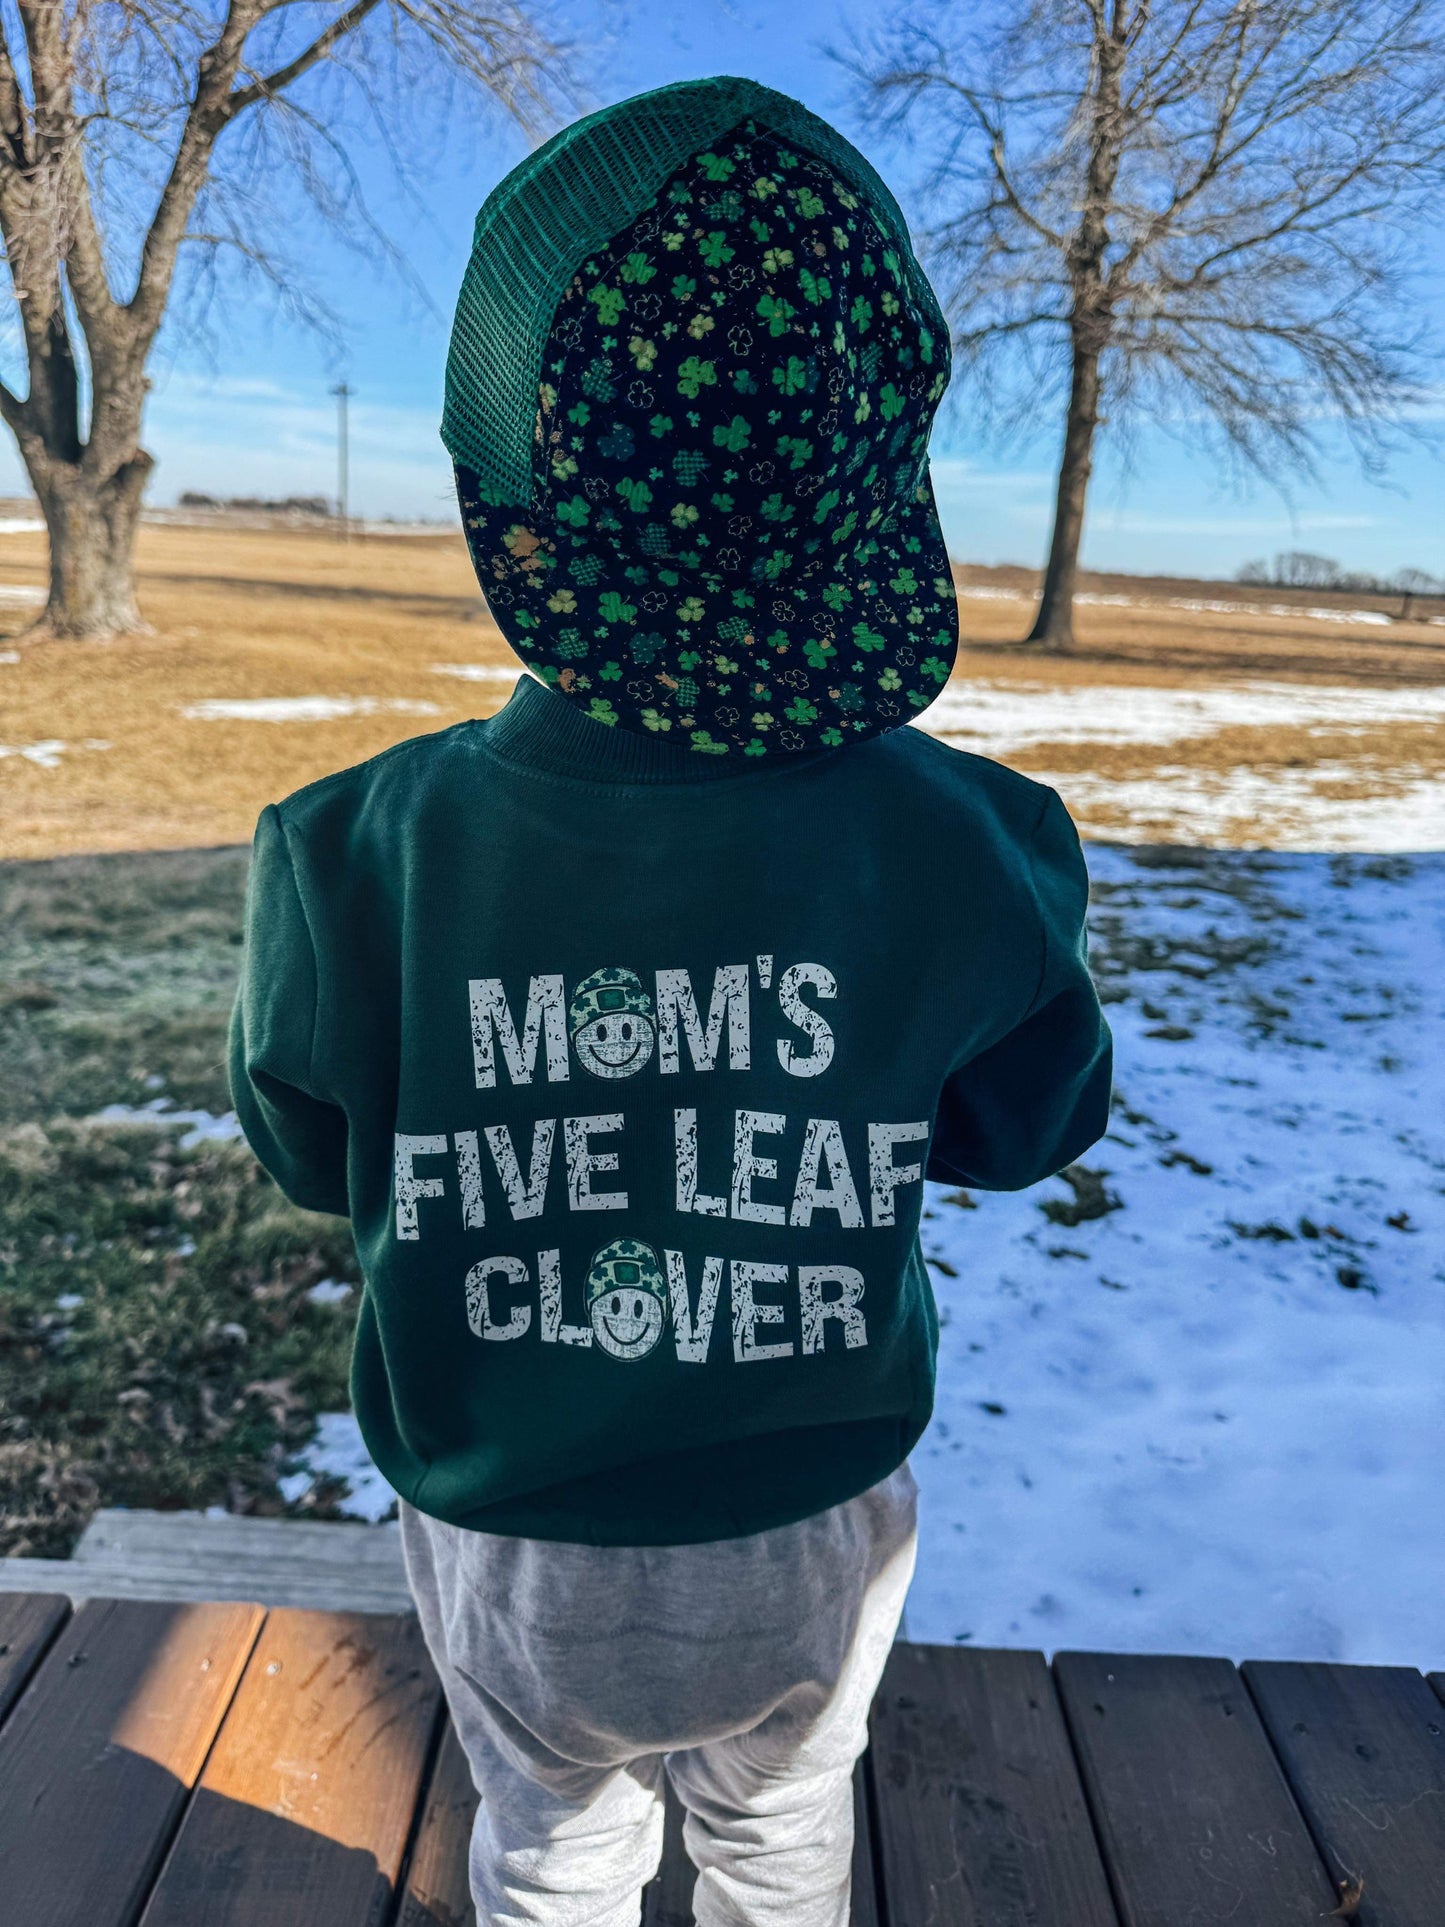 Moms five leaf clover ( sweatshirt only)